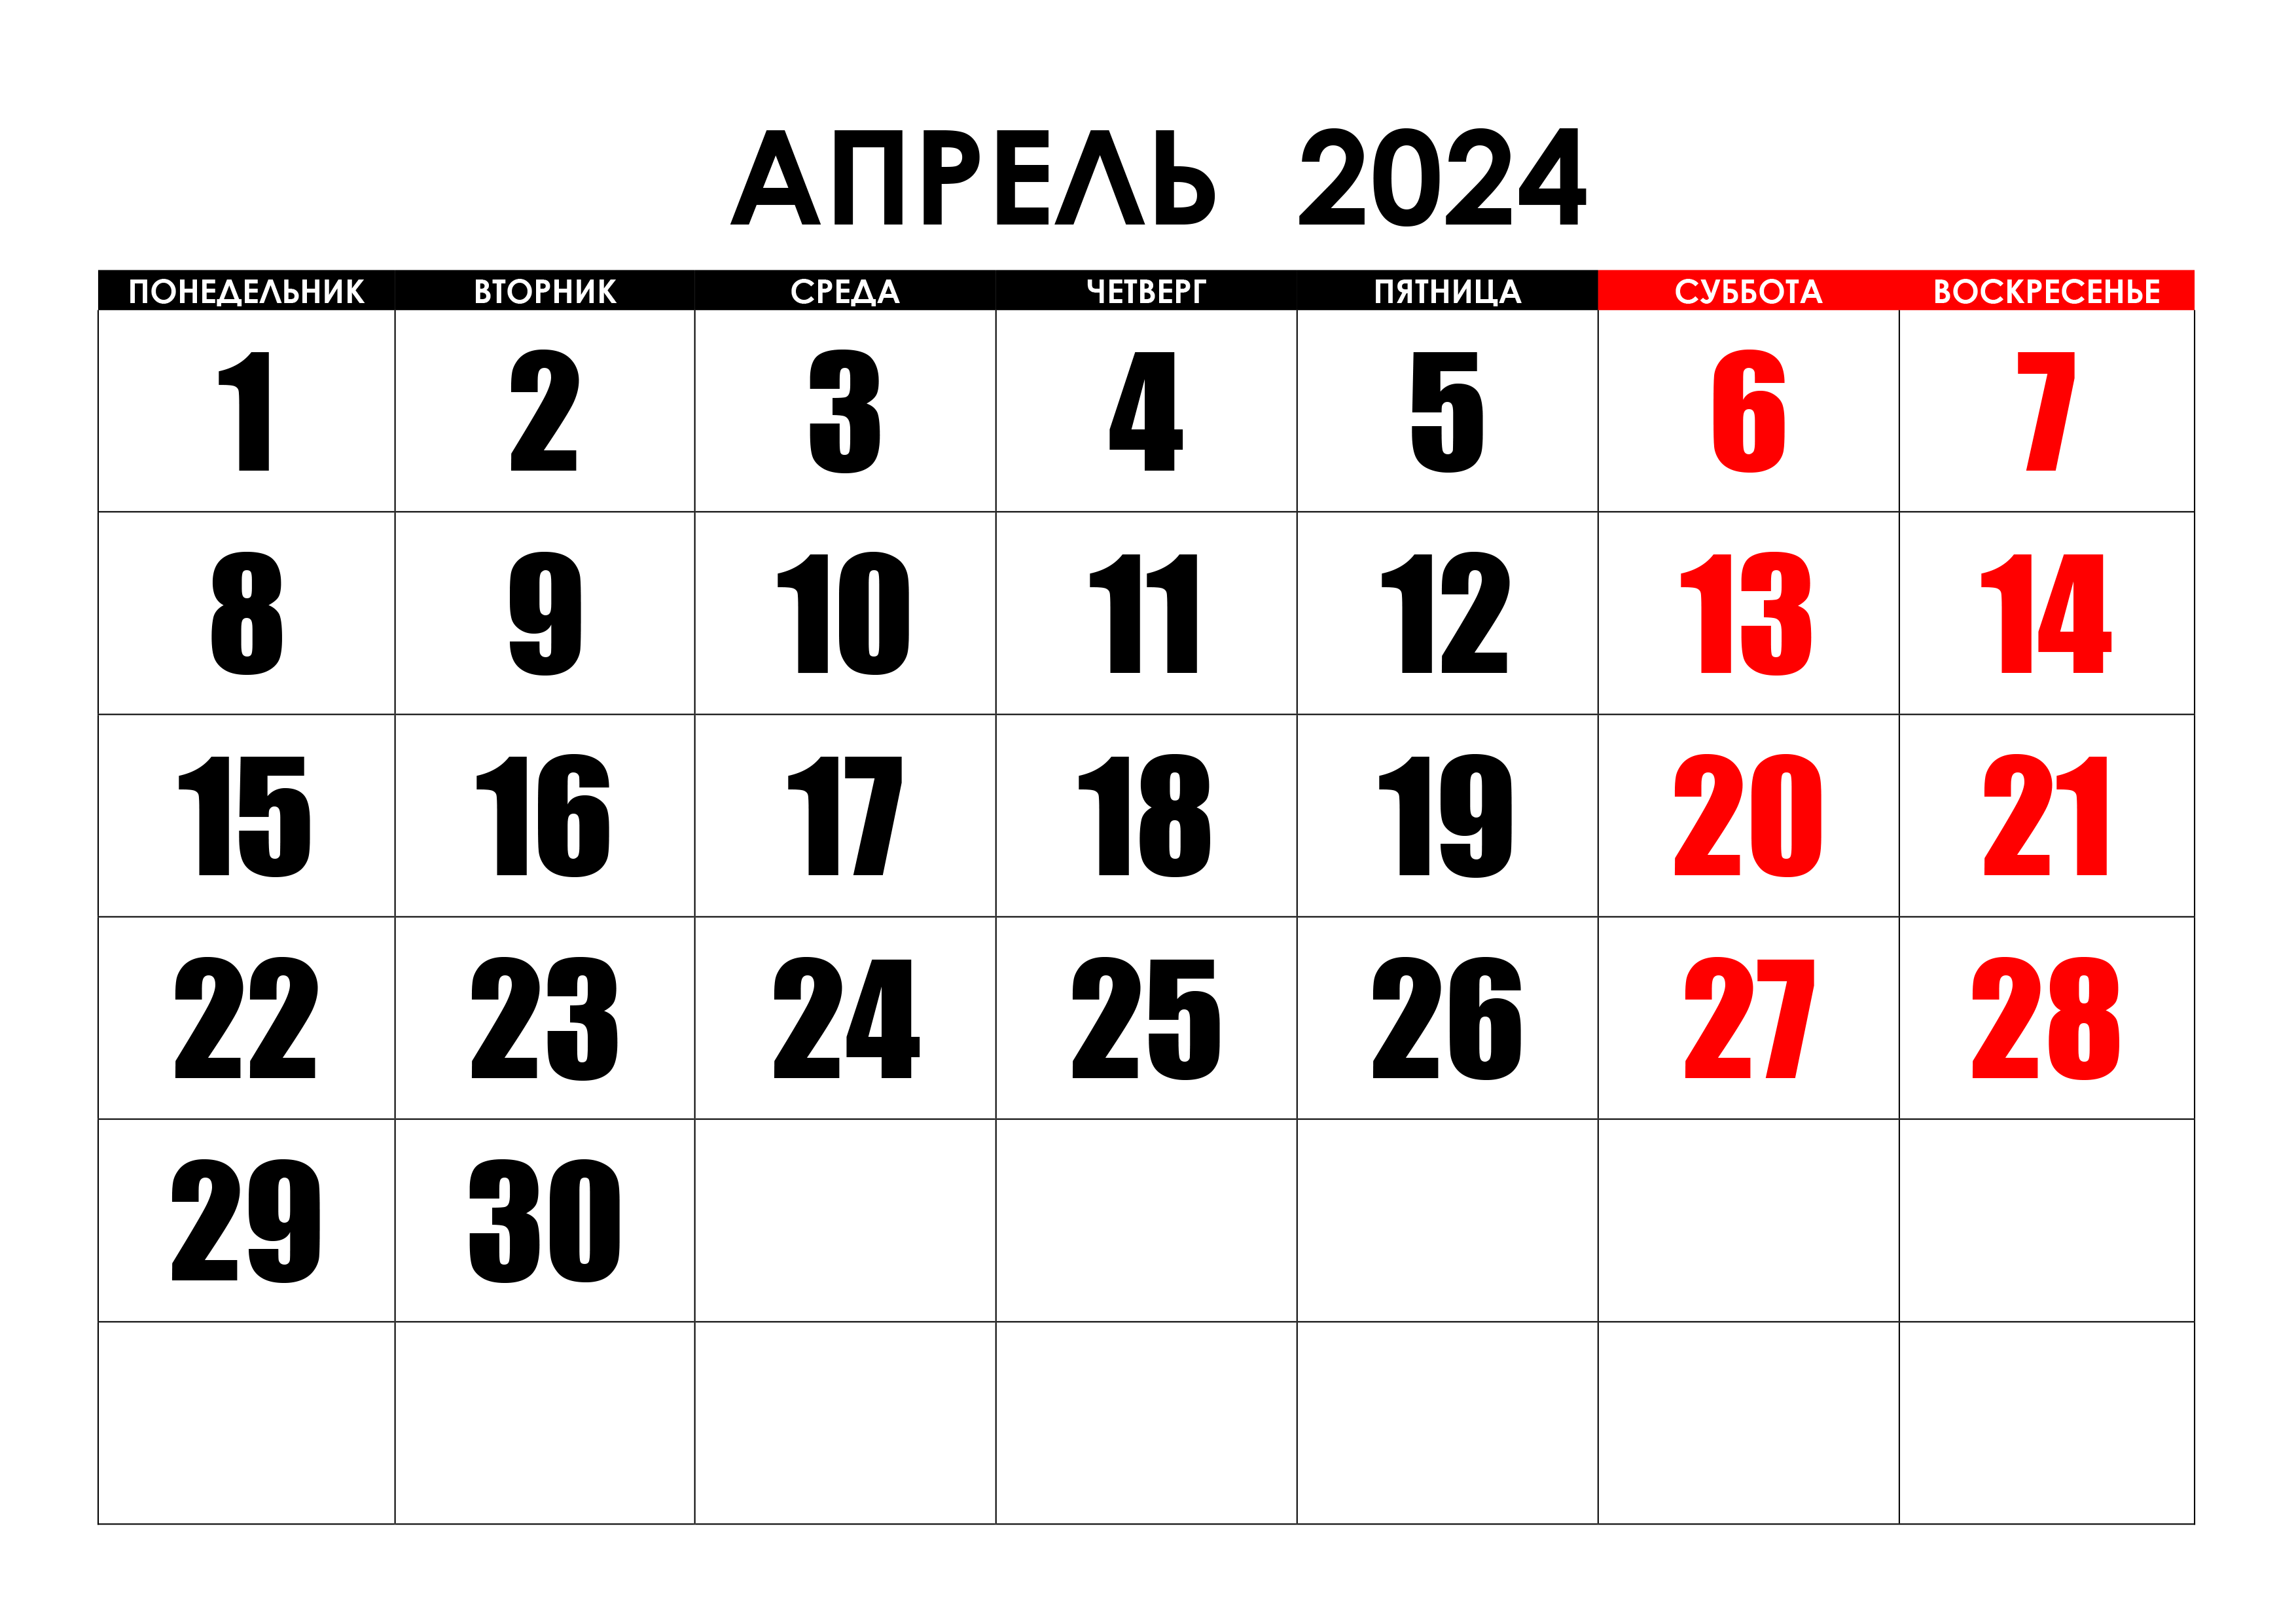 Сколько дней до 2 мая 2024 года. Календарь август 2022. Календарь на май 2022 года. Календарь на август 2022г. Календарь на пвгуст 2022года.